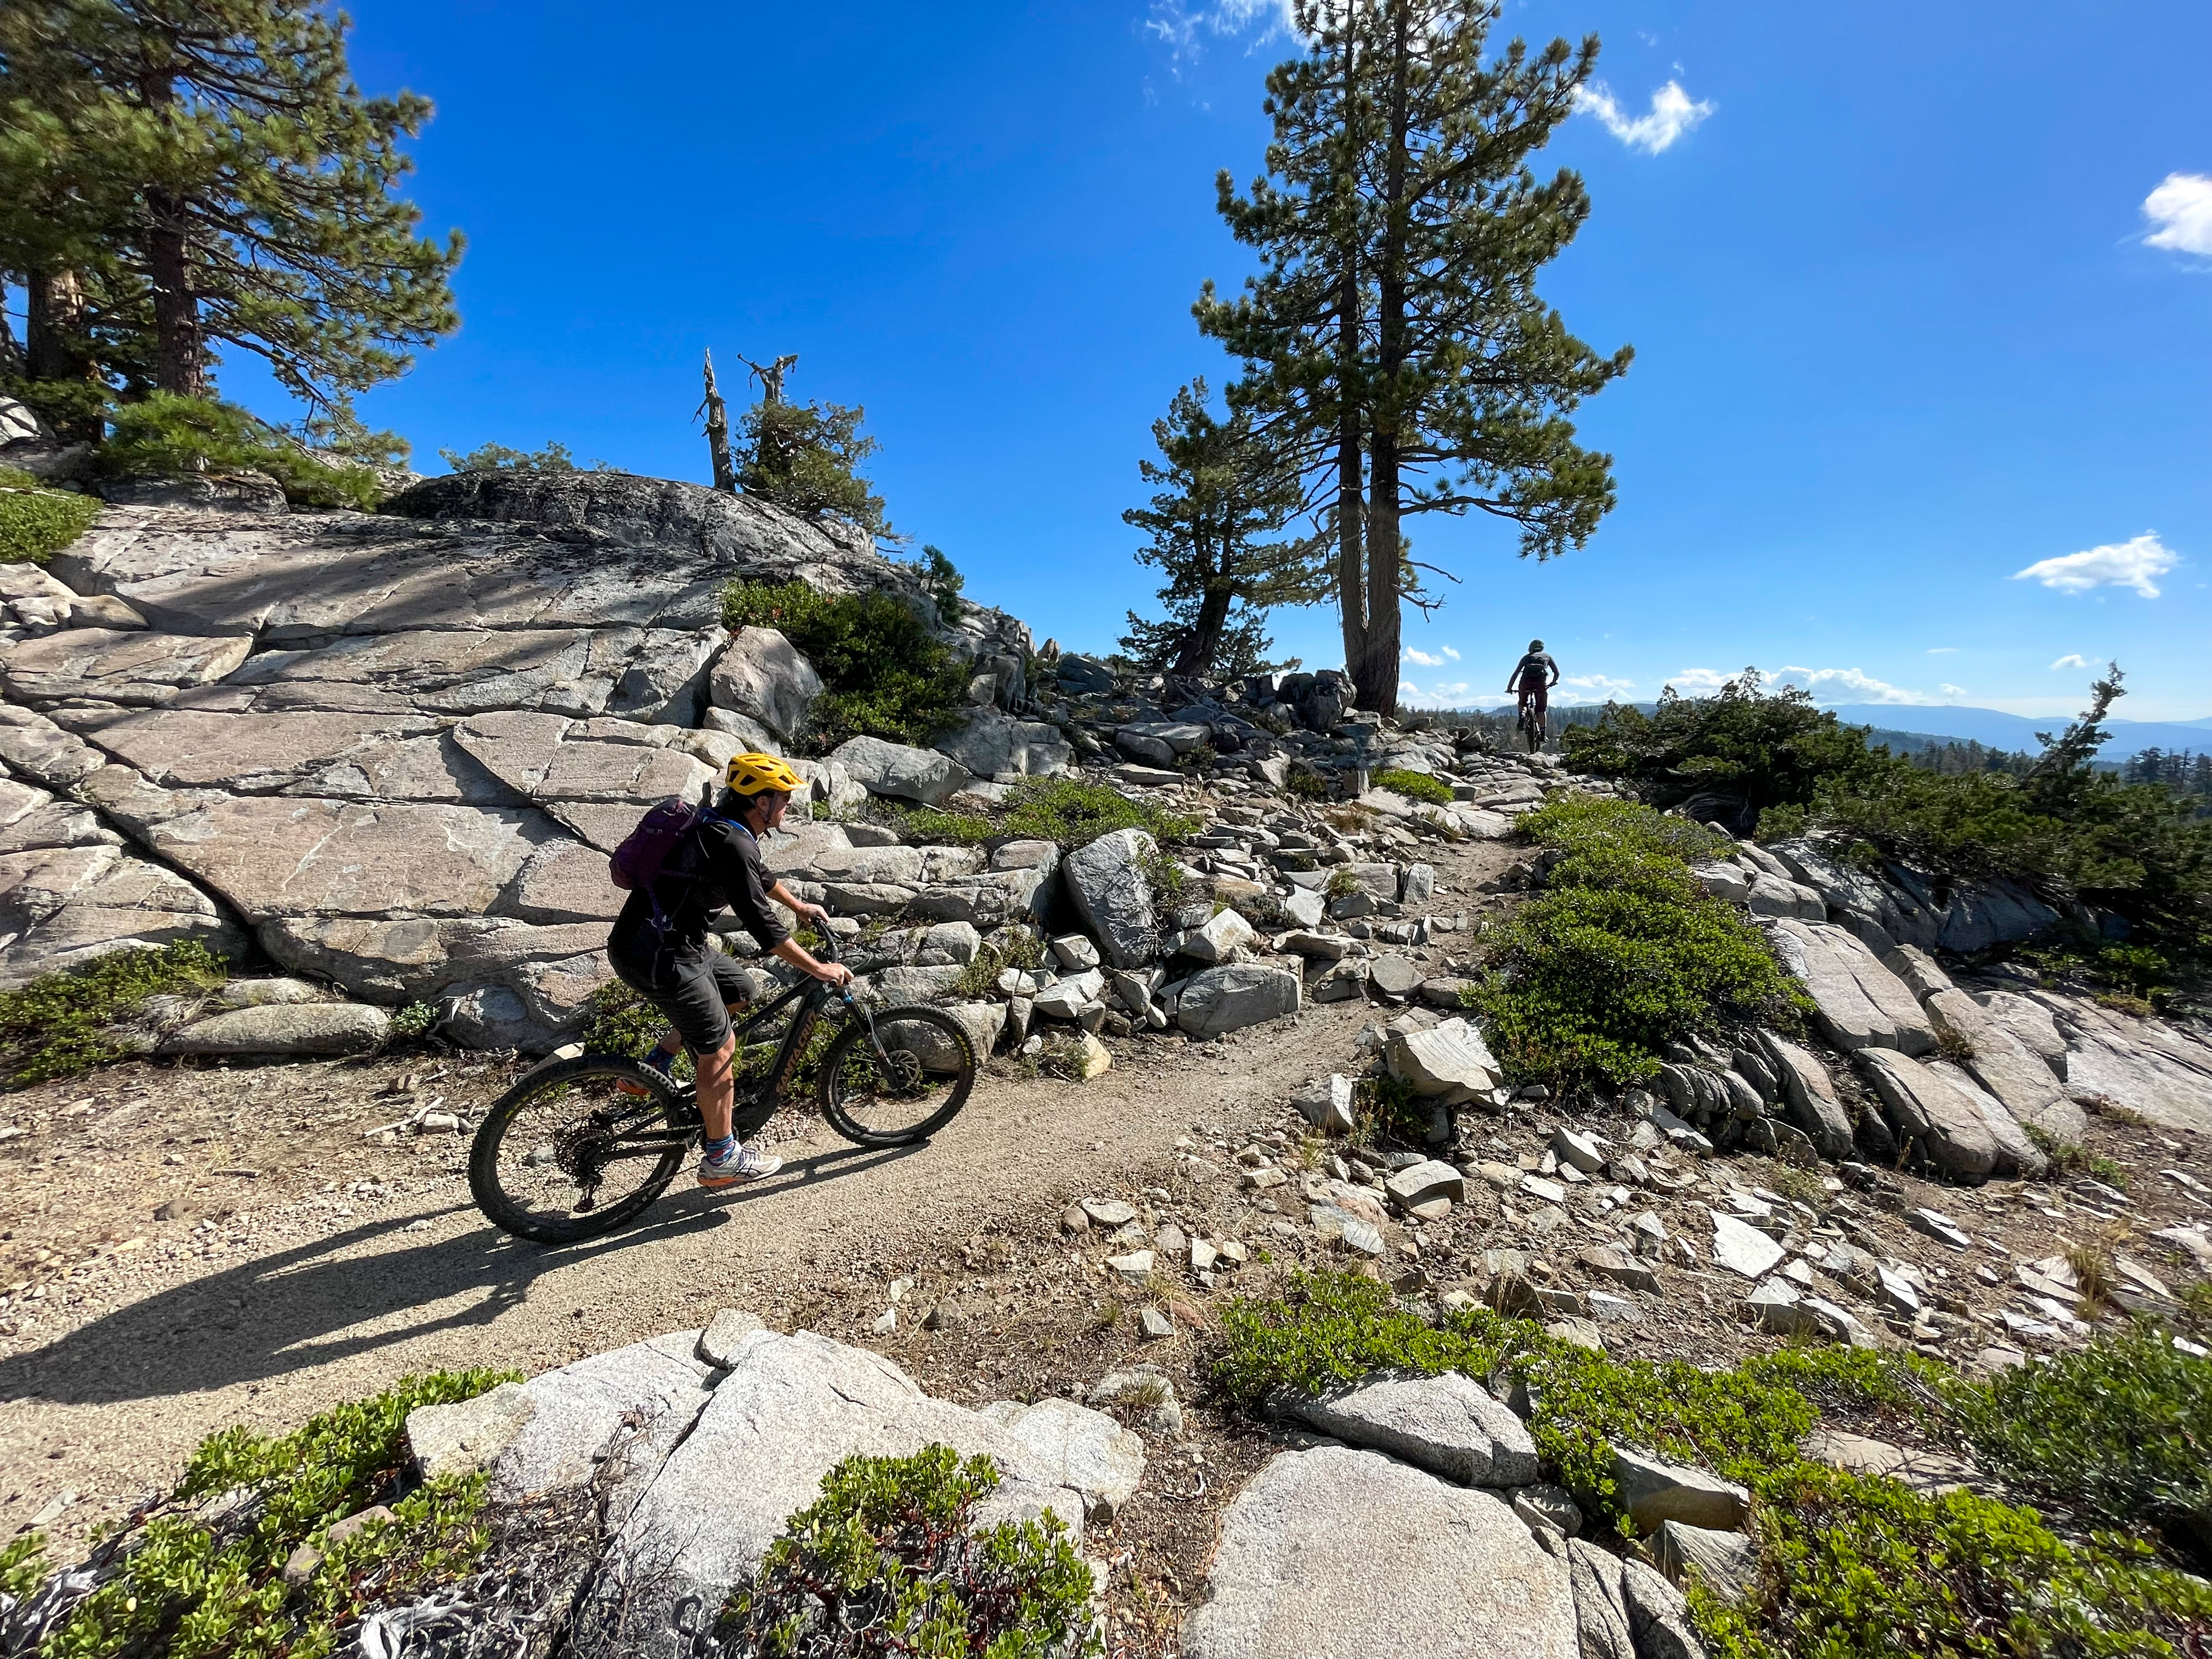 Two mountain bikers traverse rocky terrain.